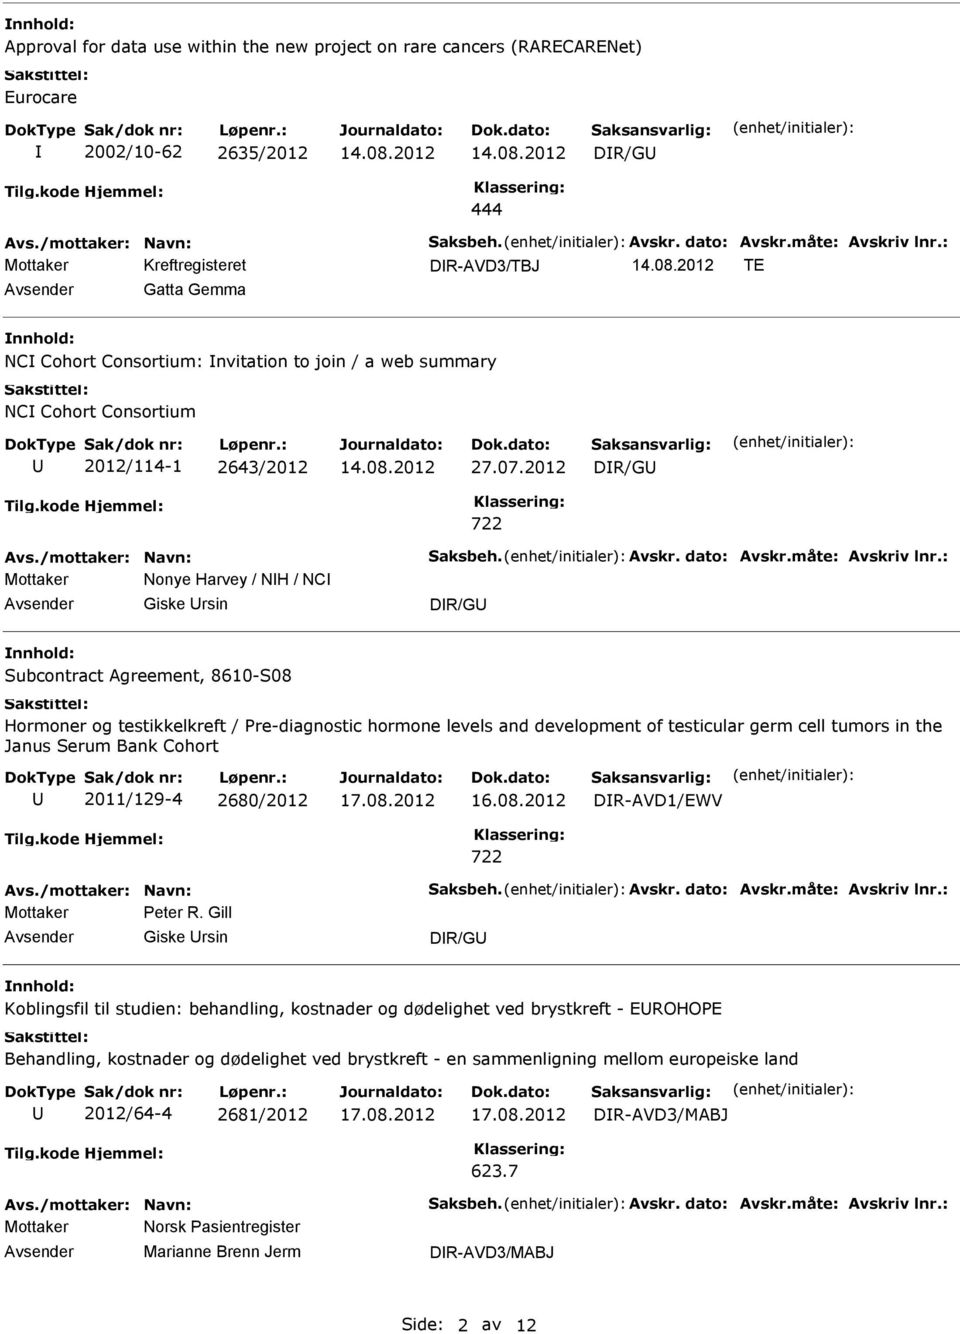 2012 Mottaker Nonye Harvey / NH / NC Giske rsin Subcontract Agreement, 8610-S08 Hormoner og testikkelkreft / Pre-diagnostic hormone levels and development of testicular germ cell tumors in the Janus